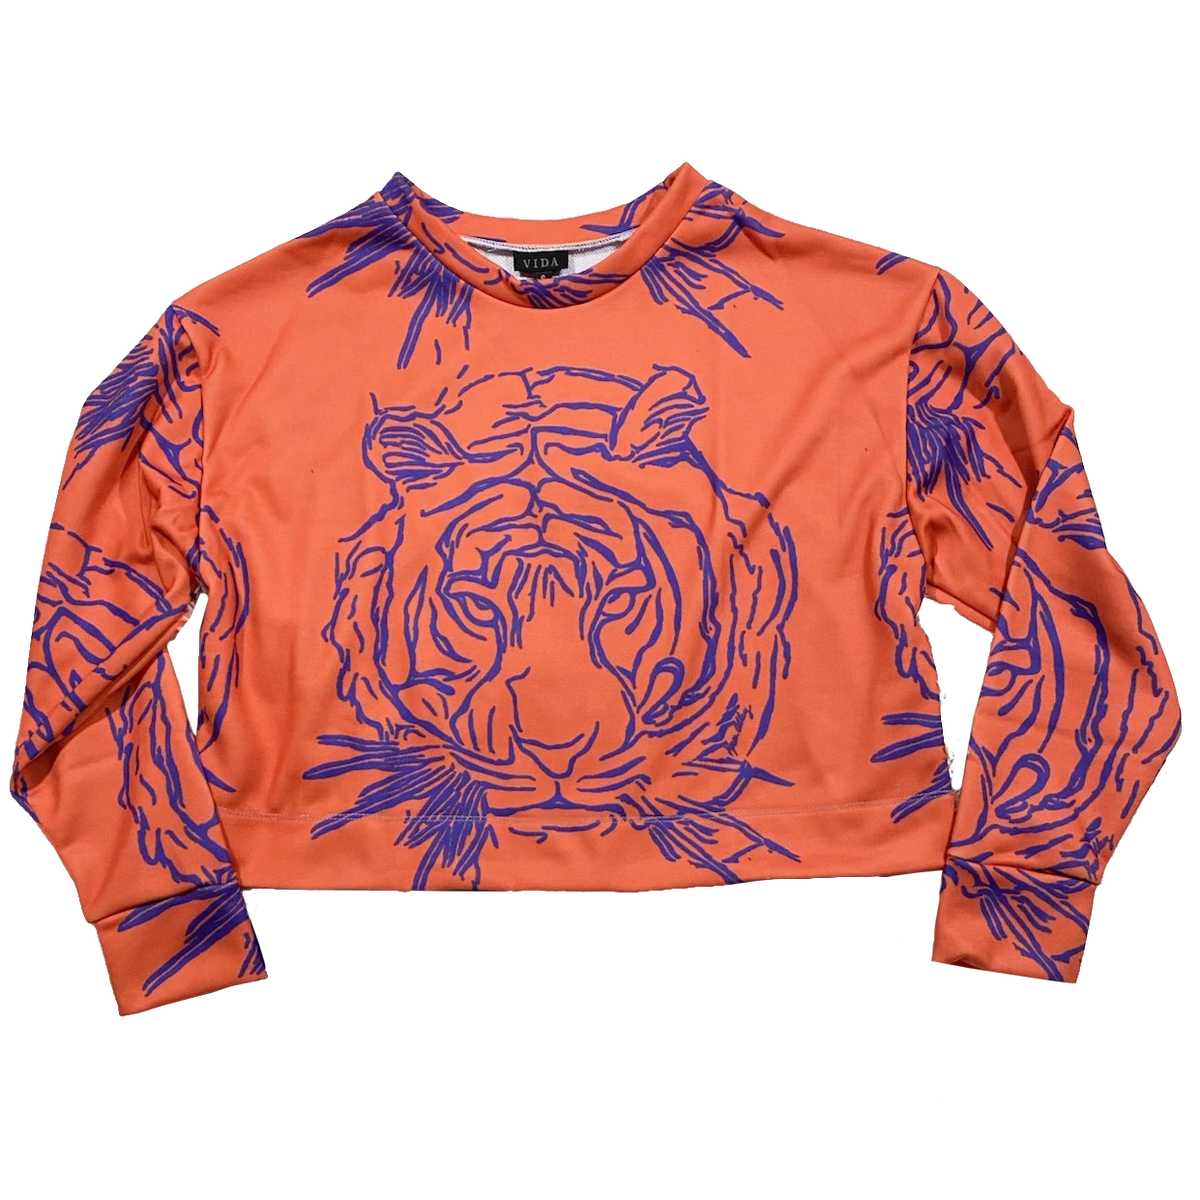 Karen Alley Orange Cropped Shirt with Purple Tiger Print - Mr. Knickerbocker